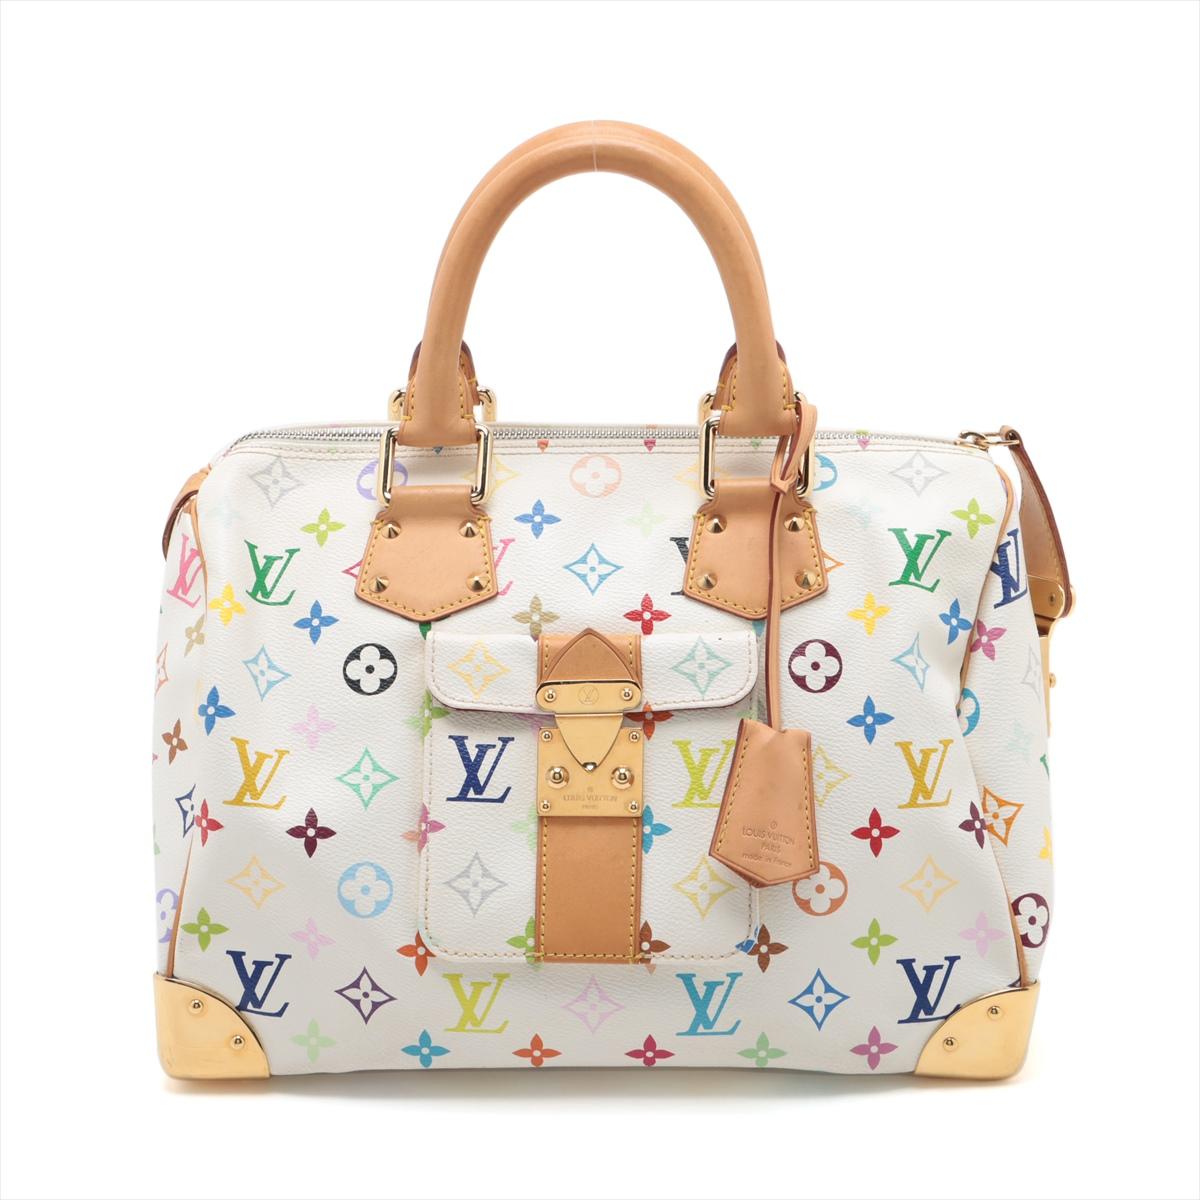 Die Louis Vuitton Multicolor Speedy 30 in Weiß ist eine schillernde und kultige Handtasche, die Luxus und modernes Flair nahtlos miteinander verbindet. Die aus dem unverwechselbaren Monogram Multicolore Canvas der Marke gefertigte Tasche zeichnet